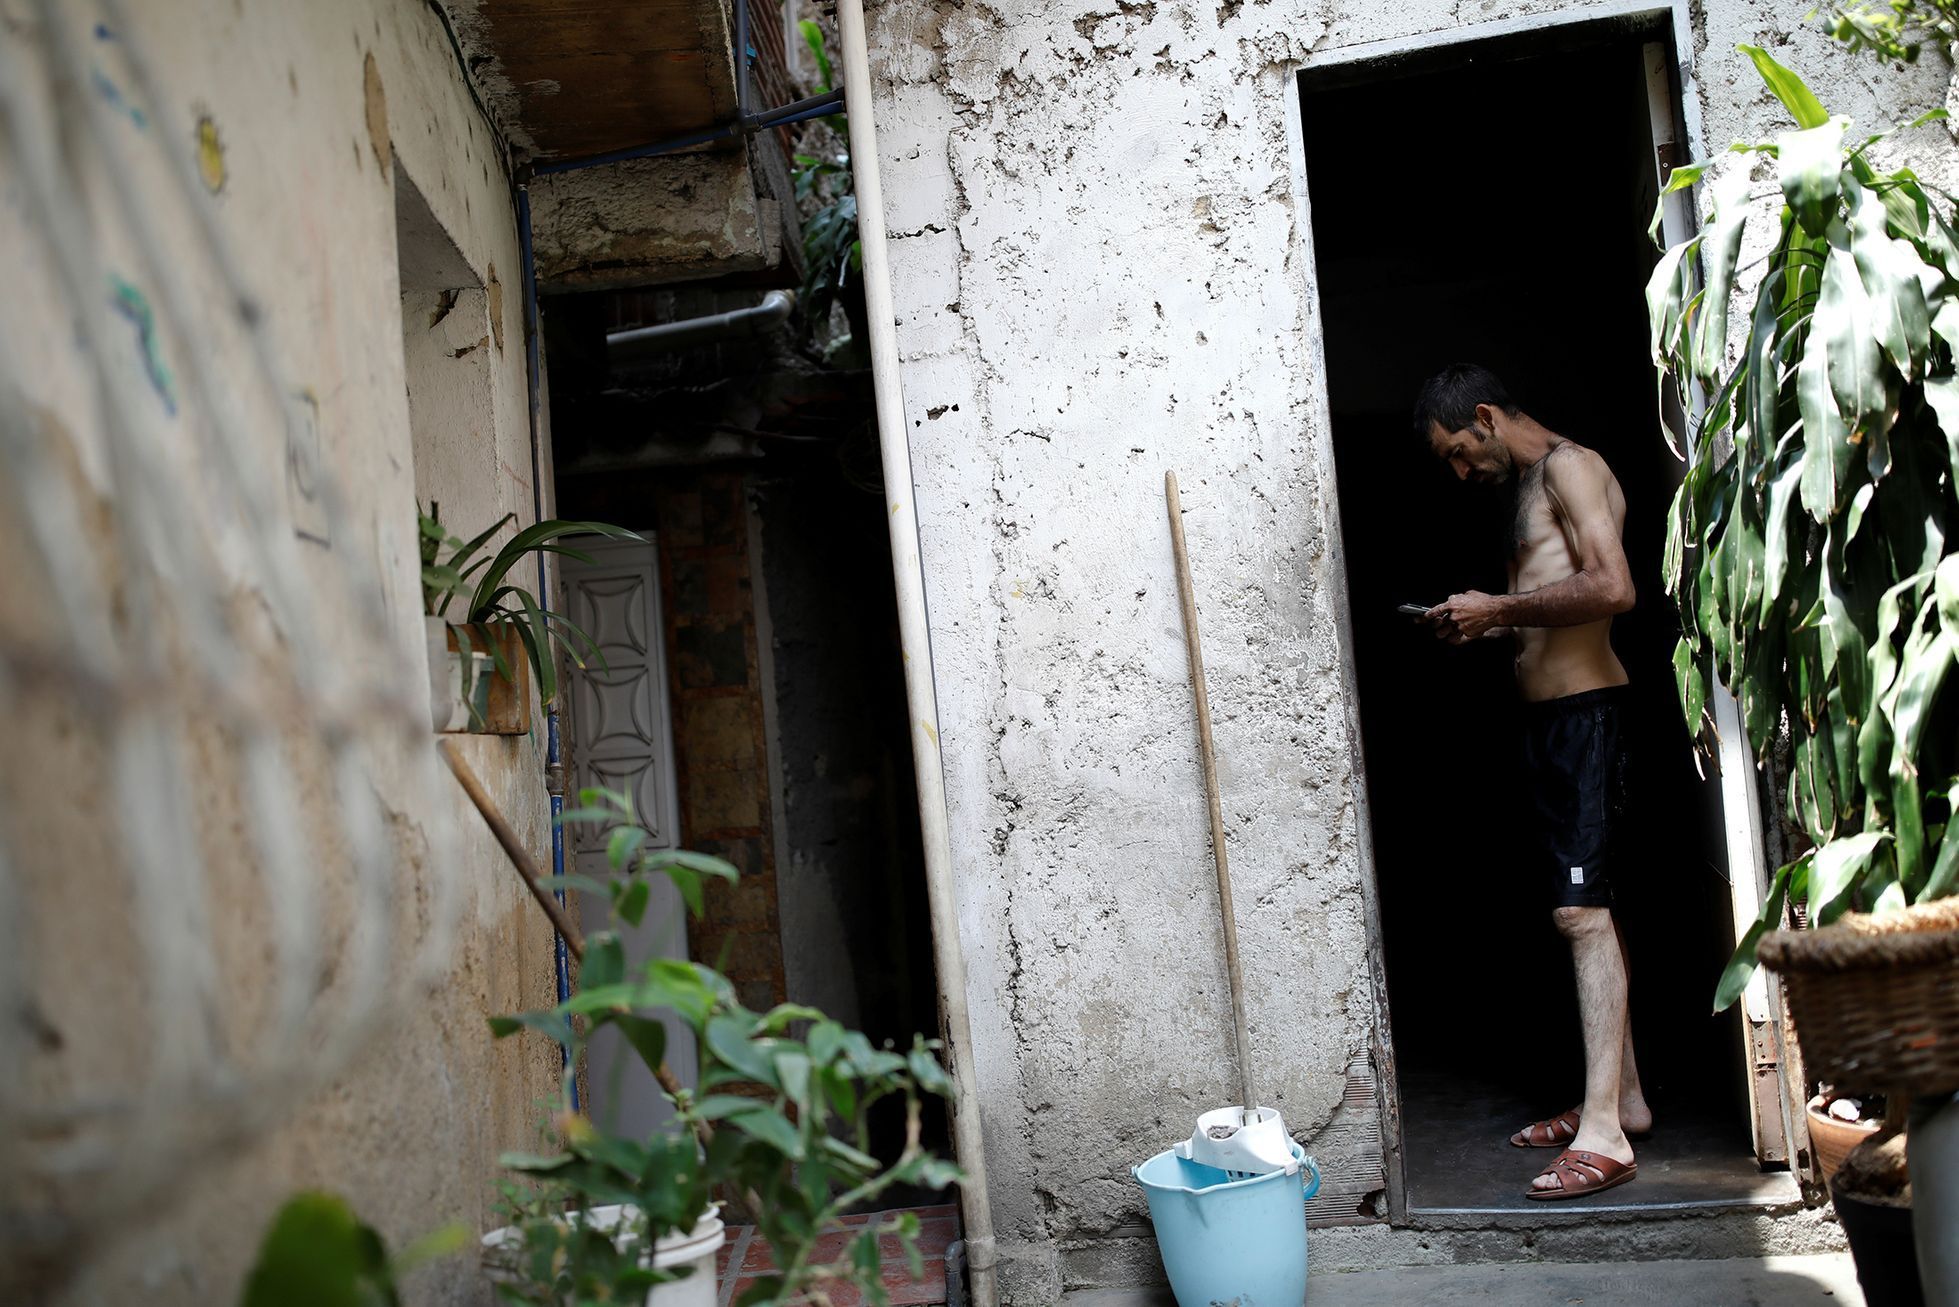 Fotogalerie / Život v krizí sužované Venezuele / Reuters